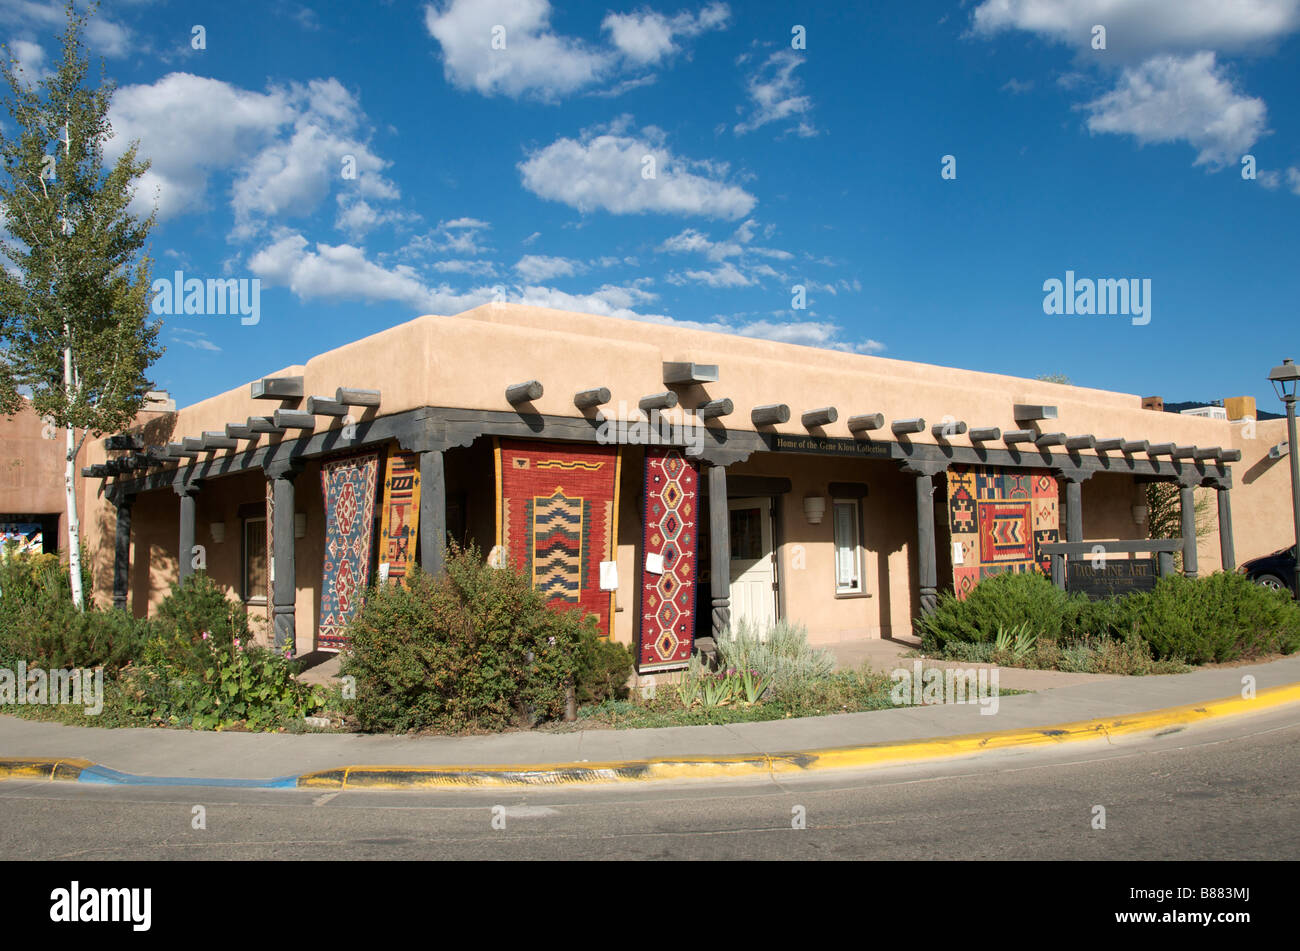 Tipica architettura di adobe e tappeti e negozio di tappeti Taos New Mexico USA Foto Stock